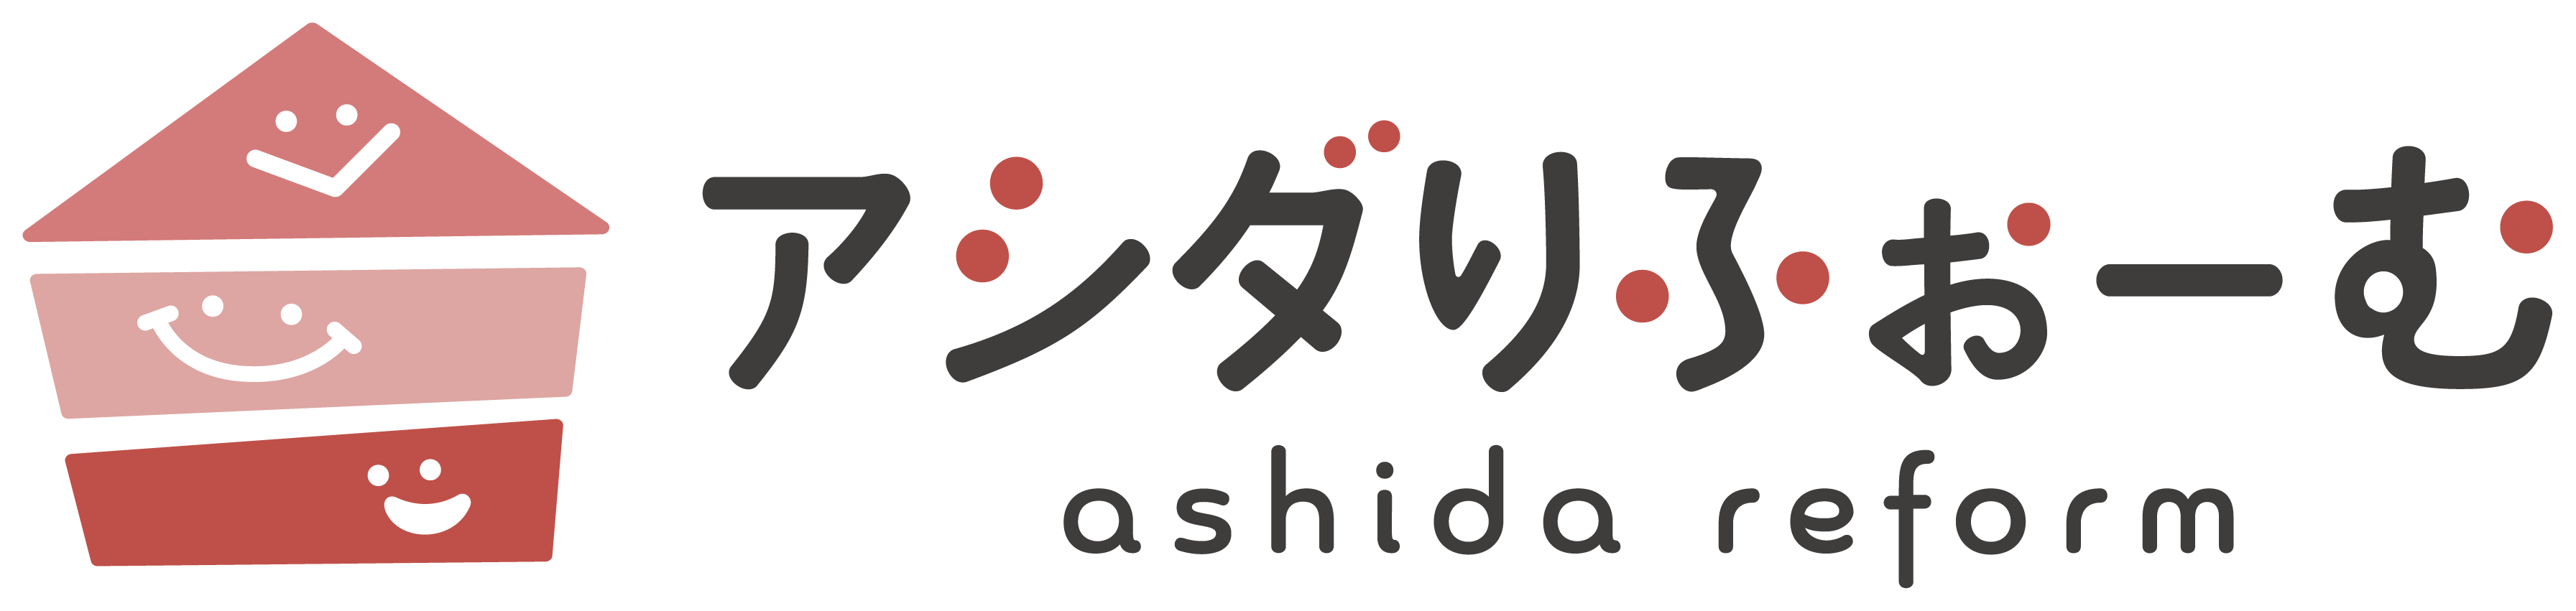 ashida